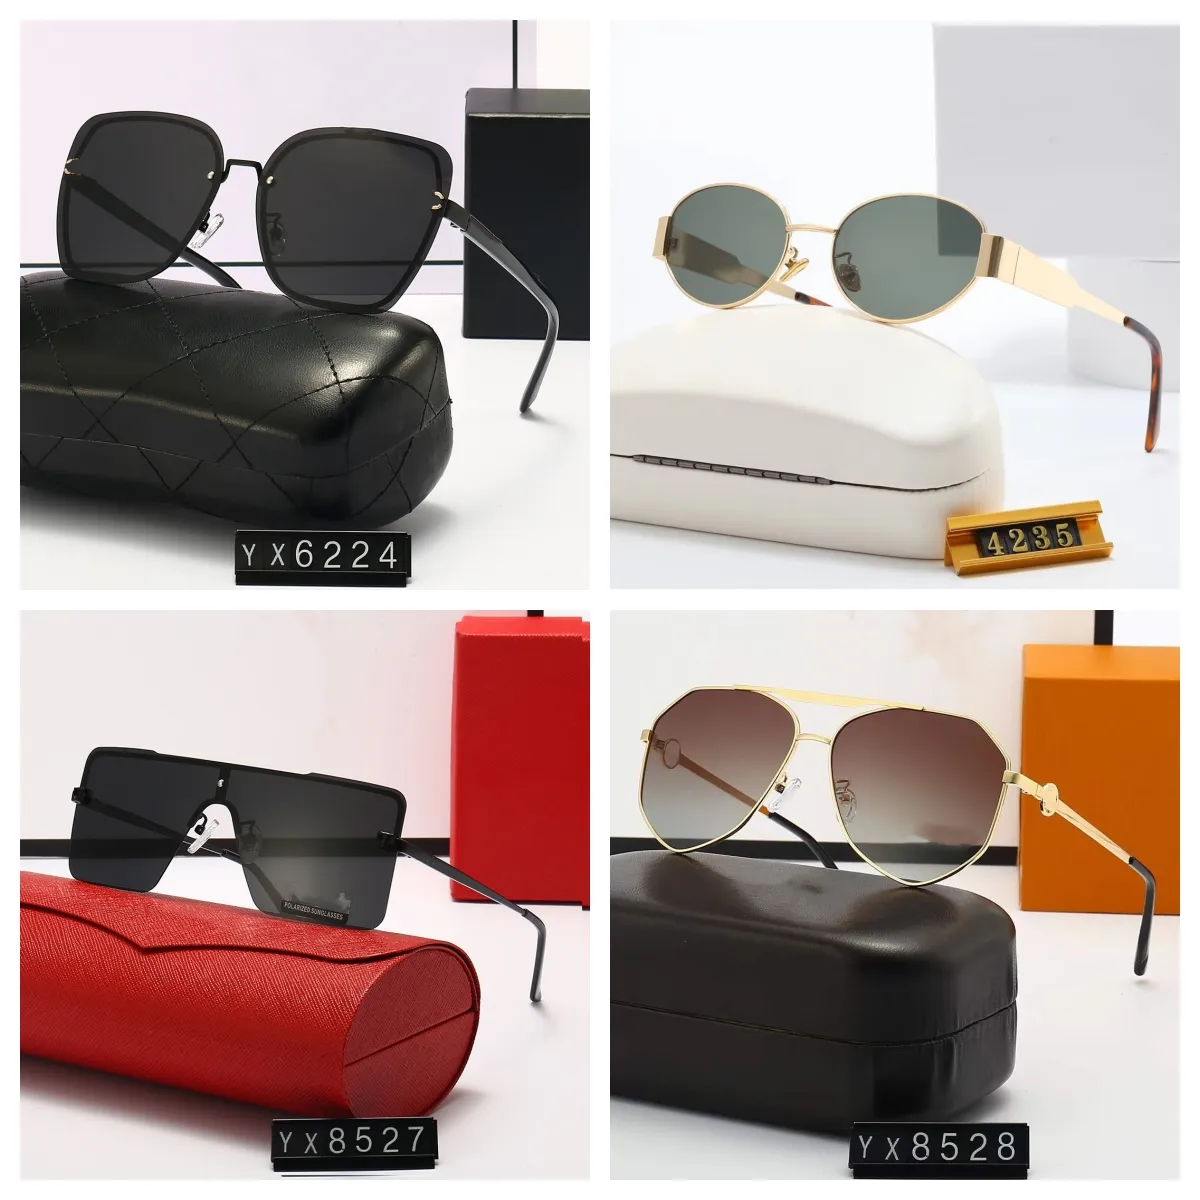 Top Look modne okulary przeciwsłoneczne Polaroid designer List dla kobiet mężczyźni okulary goggle senior moda lekka rama okularów vintage okulary przeciwsłoneczne z pudełkiem